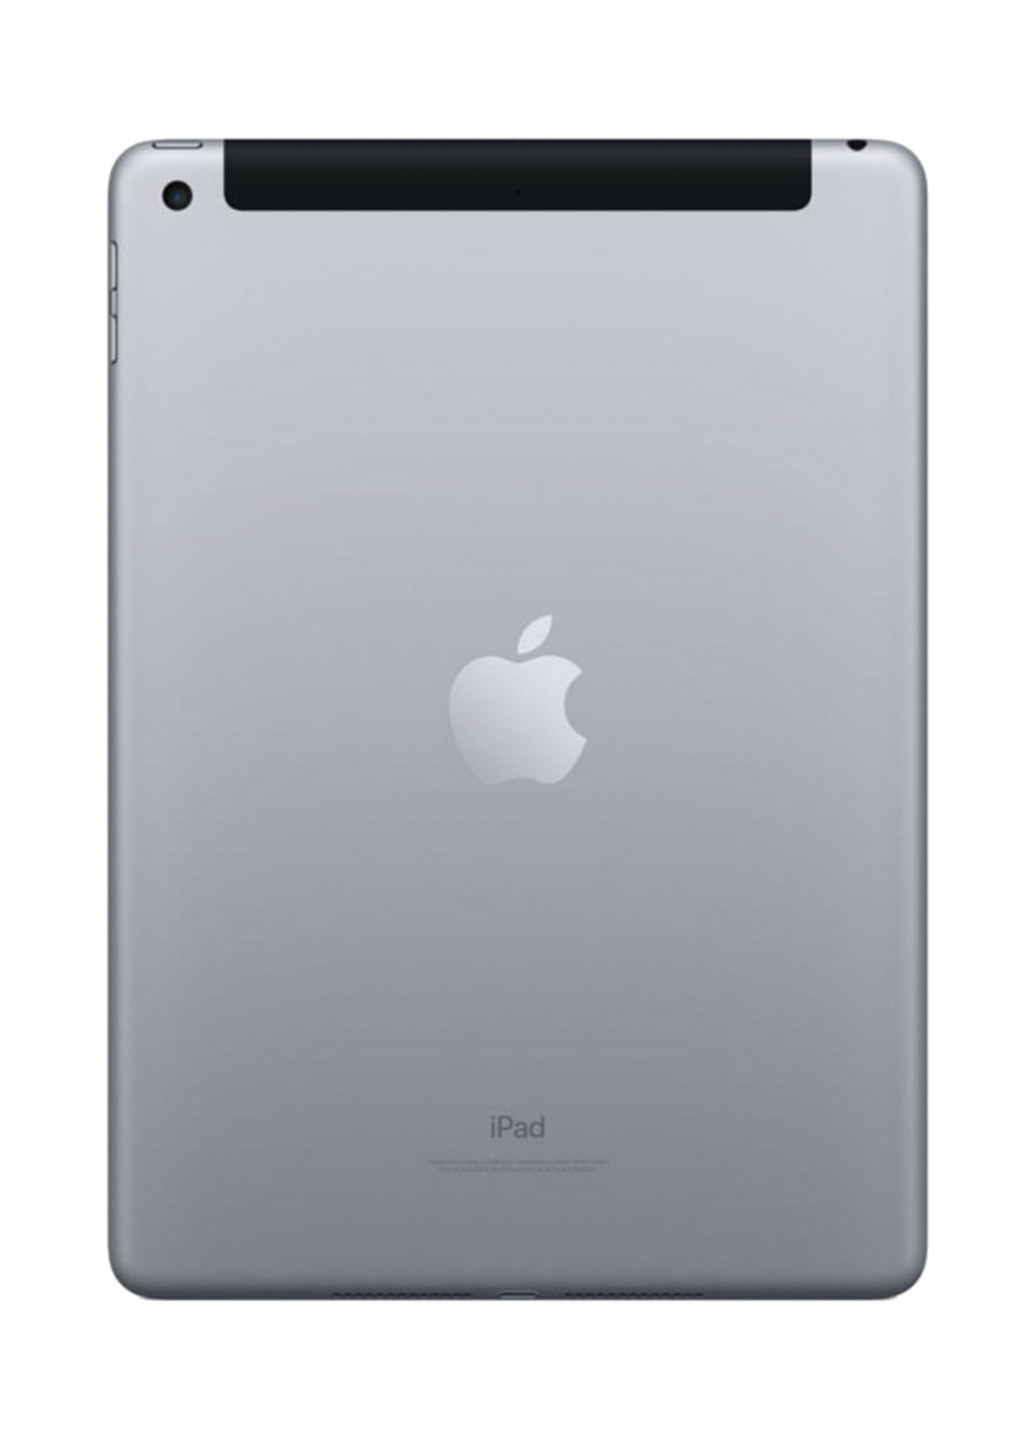 Планшет Apple ipad 9.7" wi-fi + 4g 32gb space grey (mr6n2rk/a) (131623696)